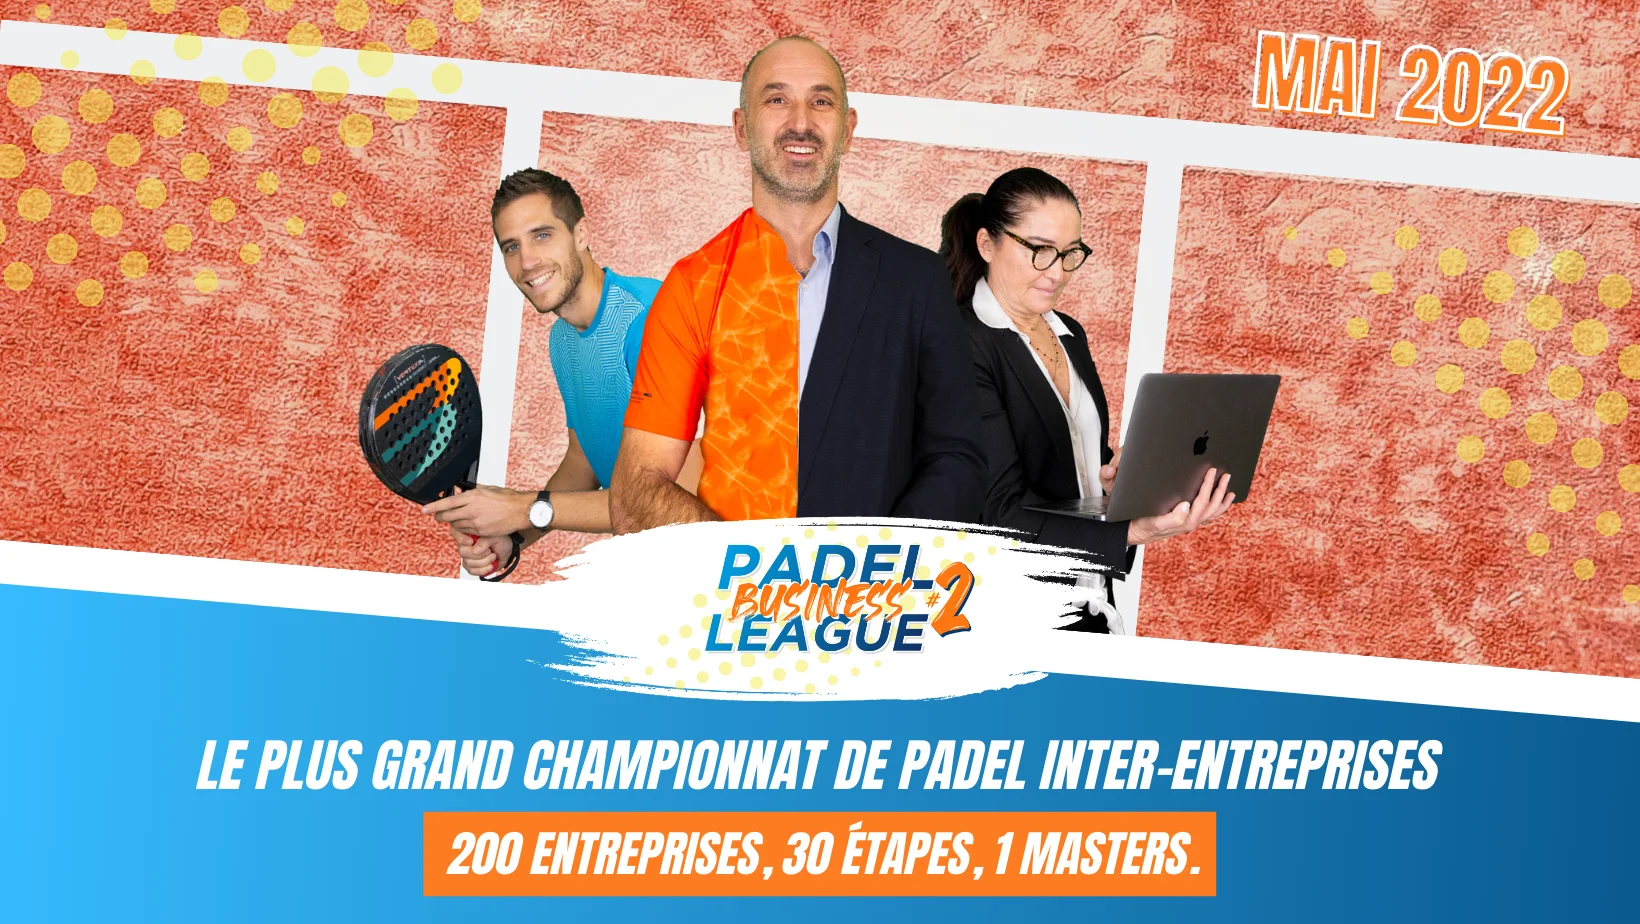 Padel Business League